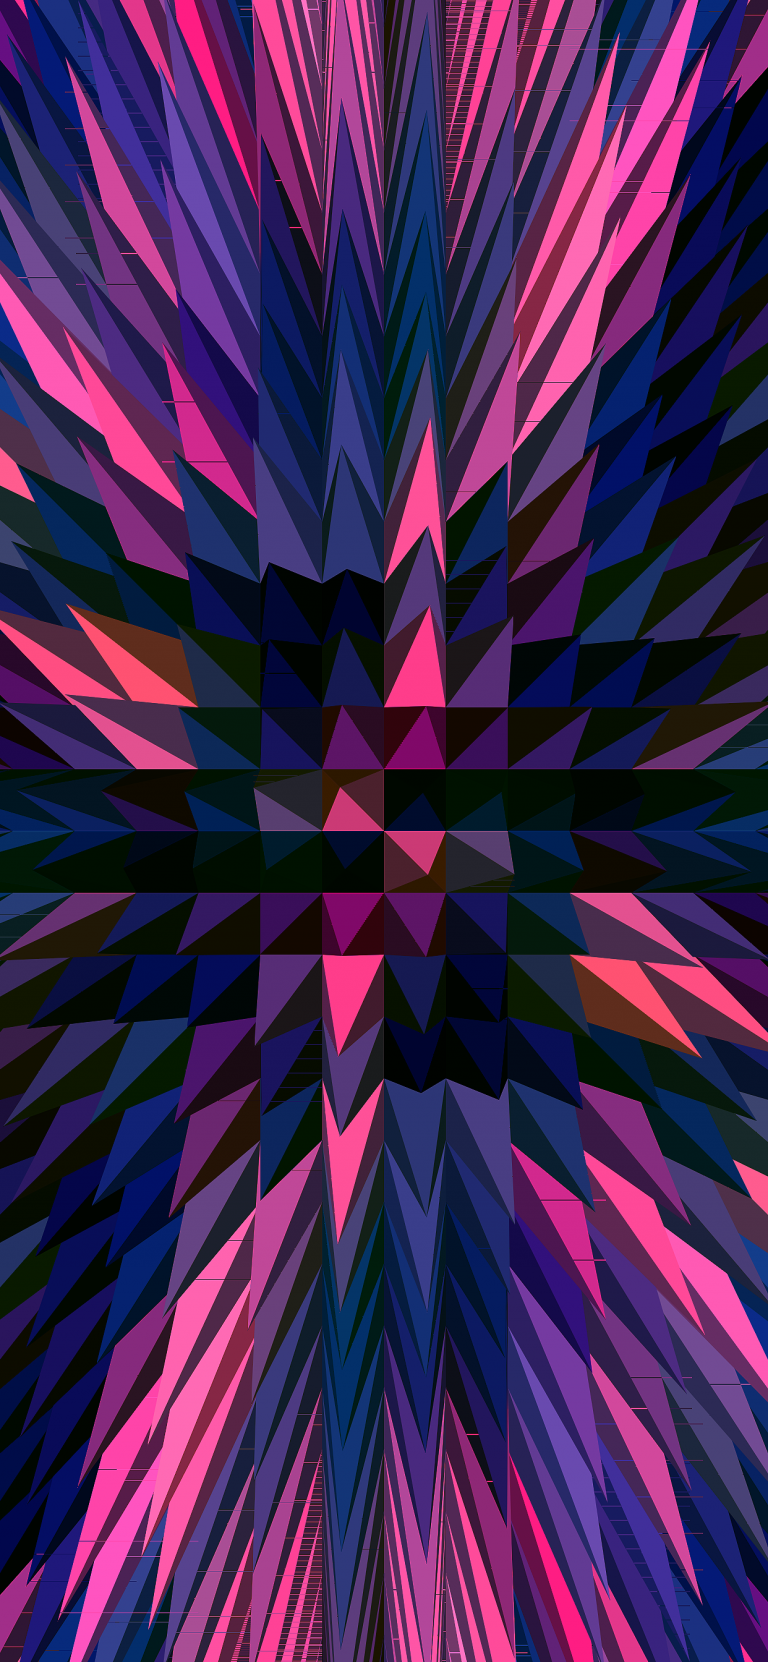 Pyramids-3D-Multicolors-for-iPhoneXSMAX-iPhoneXR-ar72014-768×1662